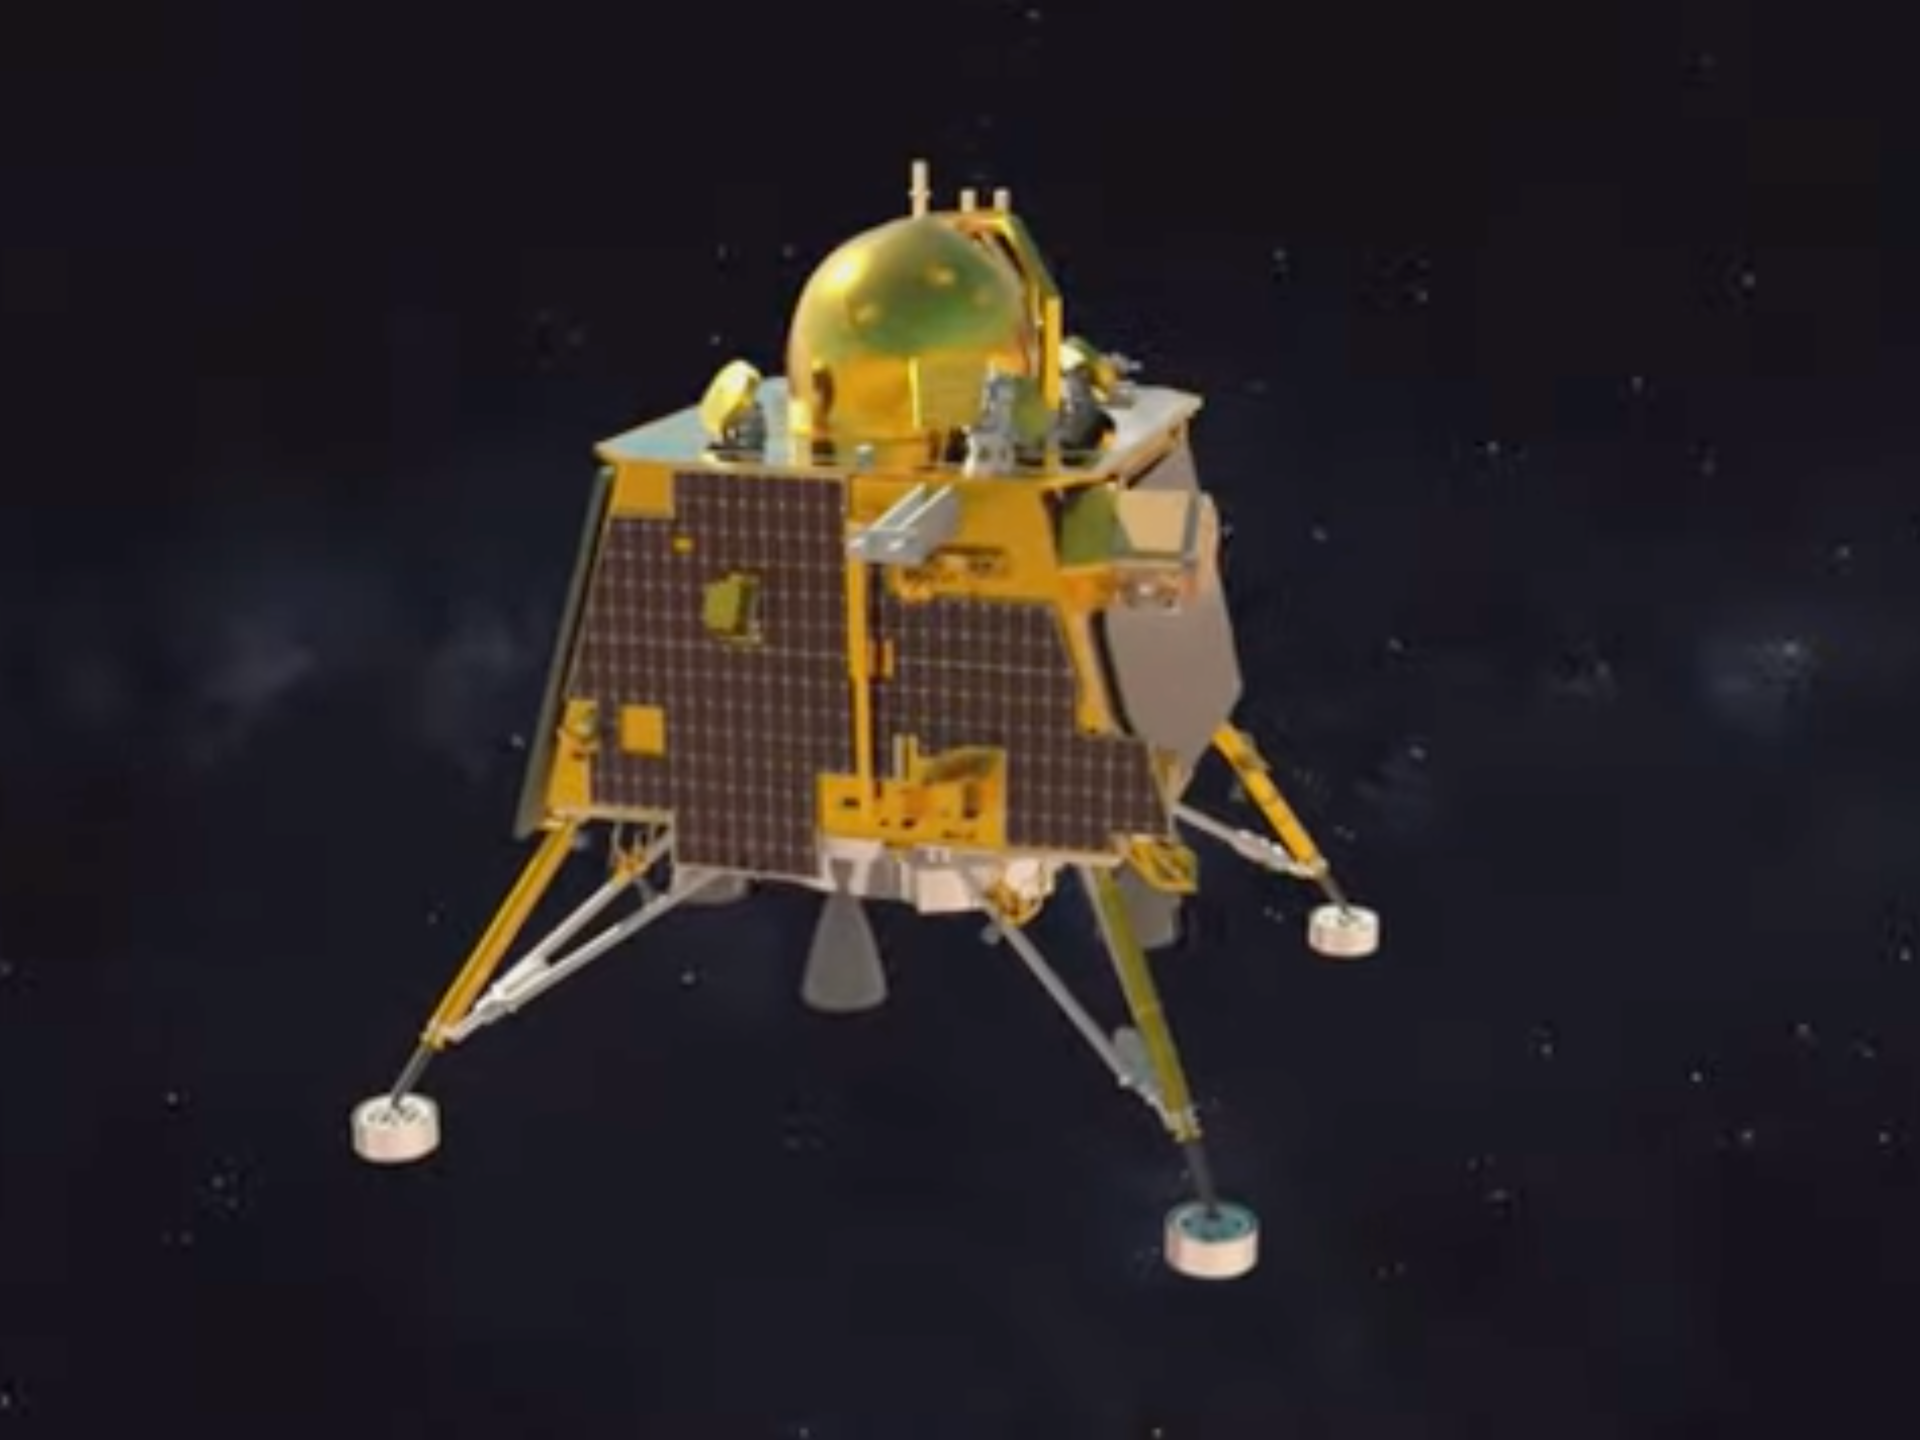 Wiadomości na żywo z lądowania na Księżycu w Indiach: Chandrayaan-3 jako pierwszy wylądował na biegunie południowym |  Wiadomości kosmiczne